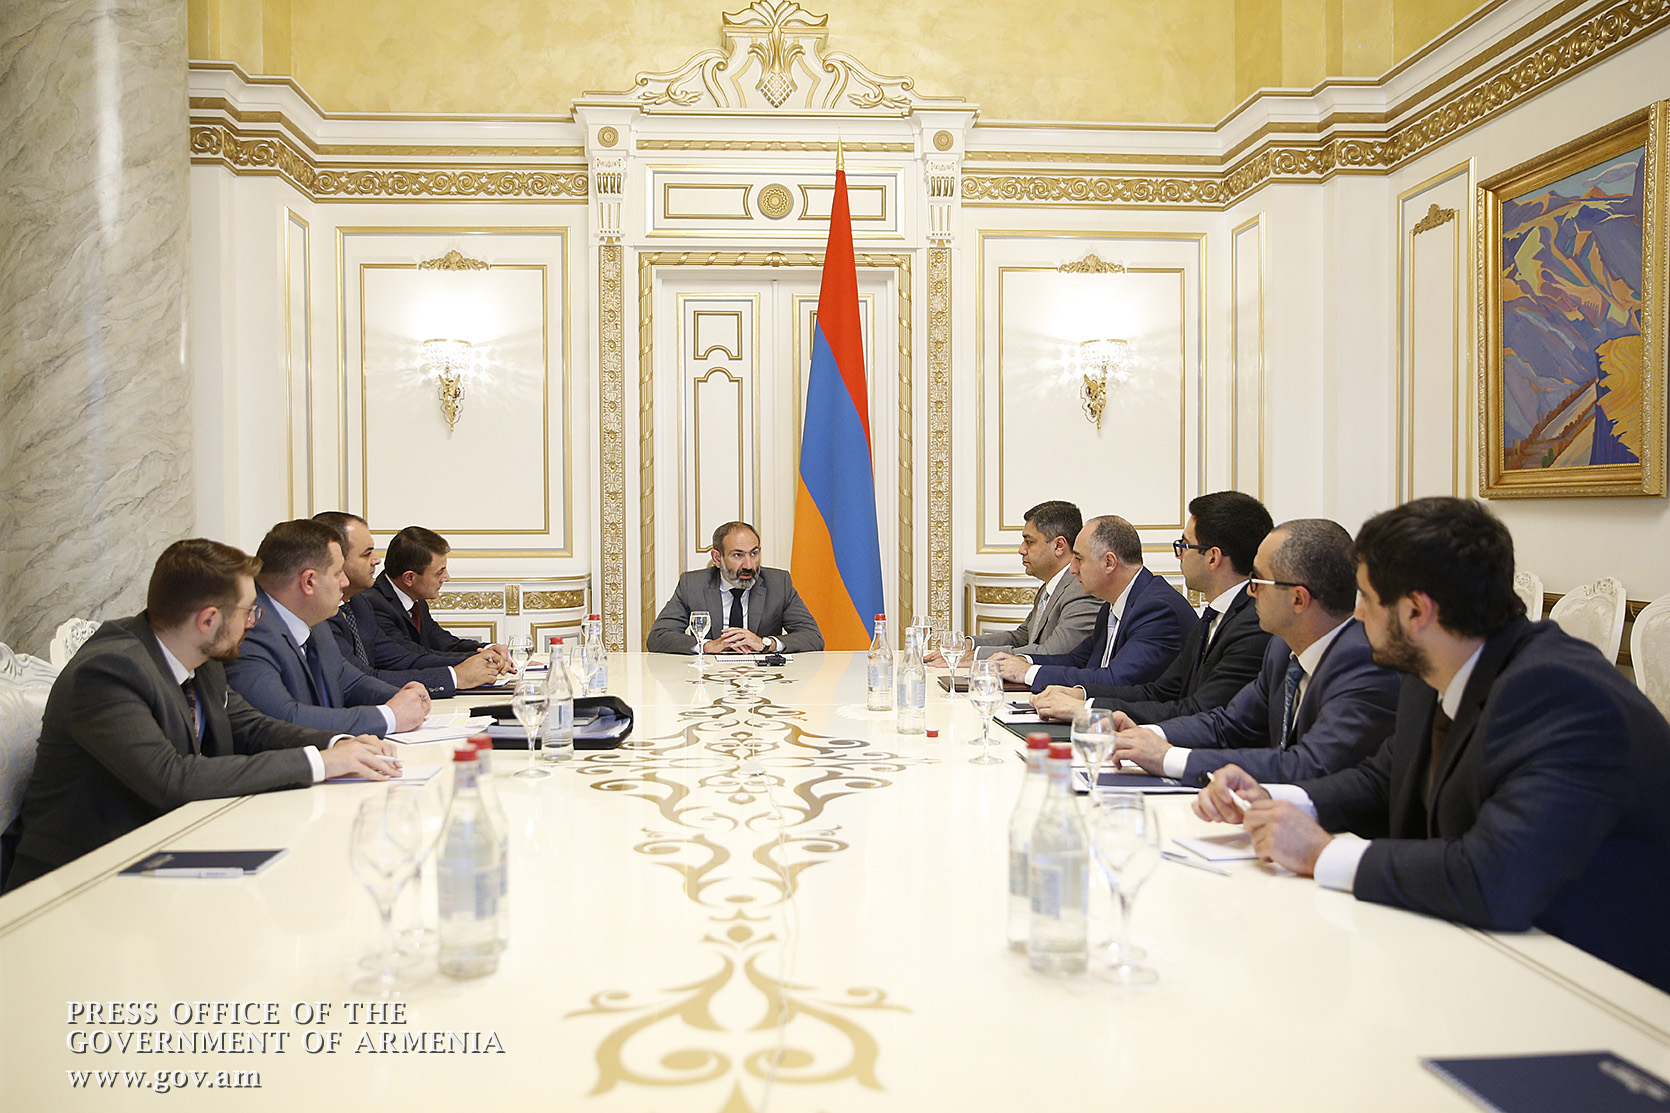 Армения закрыла тему политзаключенных и открыла страницу борьбы с коррупцией - премьер